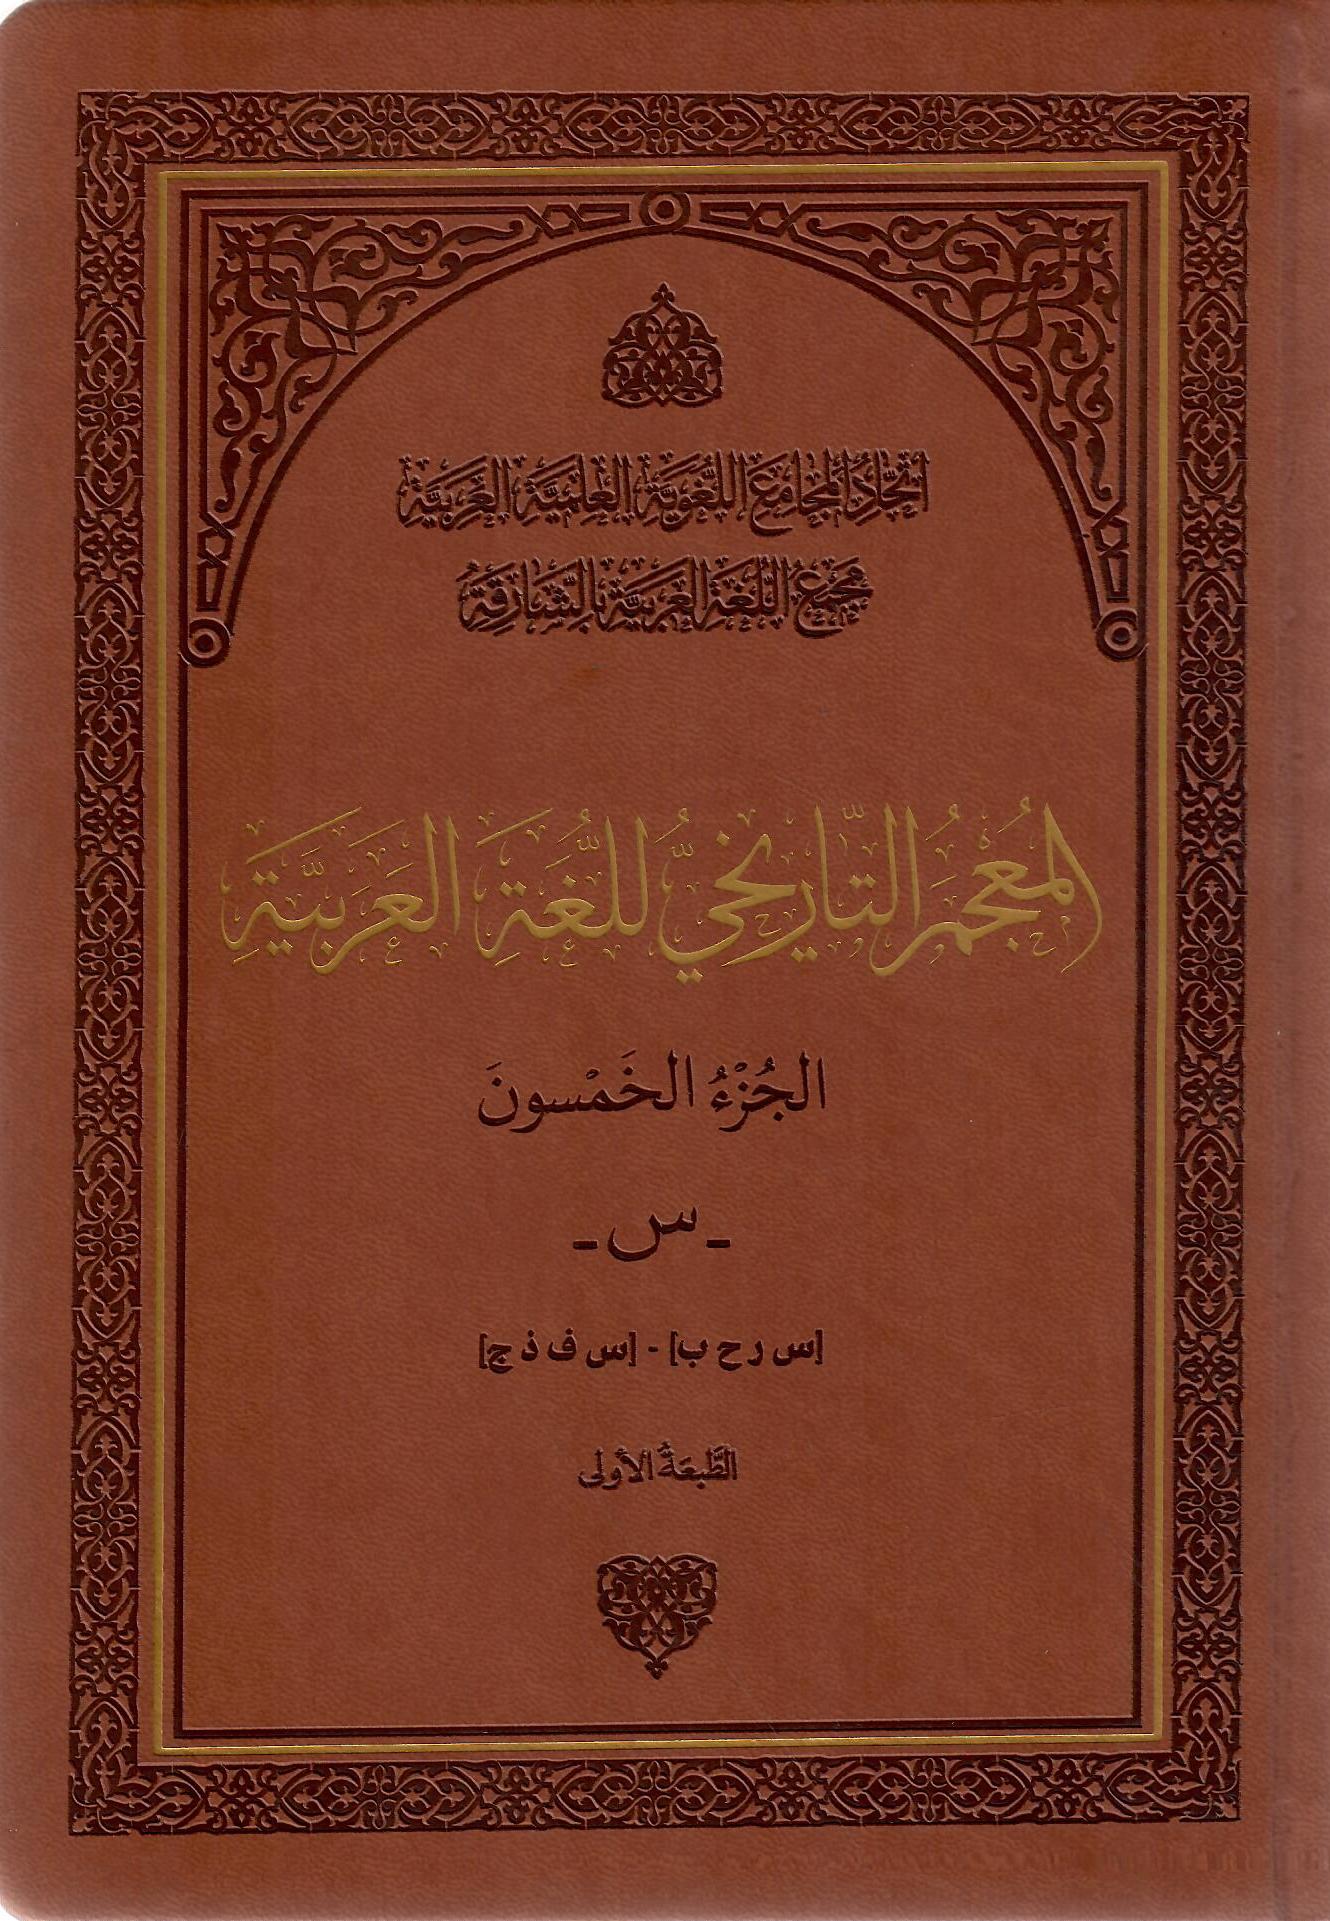 المعجم التاريخي للغة العربية الجزء الخمسون